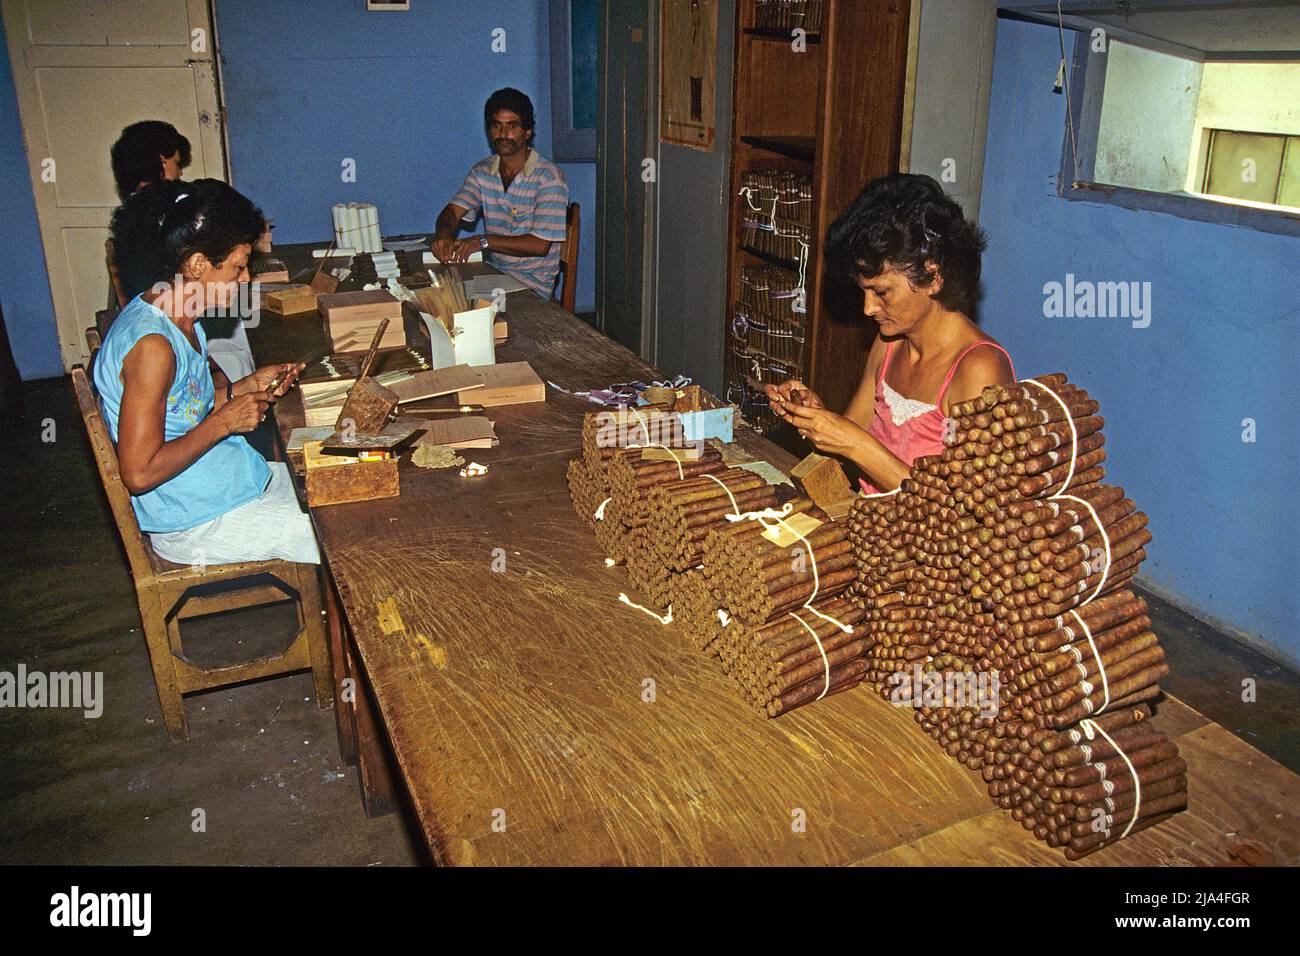 Kubanische Frauen und Maenner drehen echte kubanische Havanna-Zigarren in einer Zigarrenfabrik in Pinar del Rio, Kuba, Karibik | Cubano hombre y mujer r Foto de stock